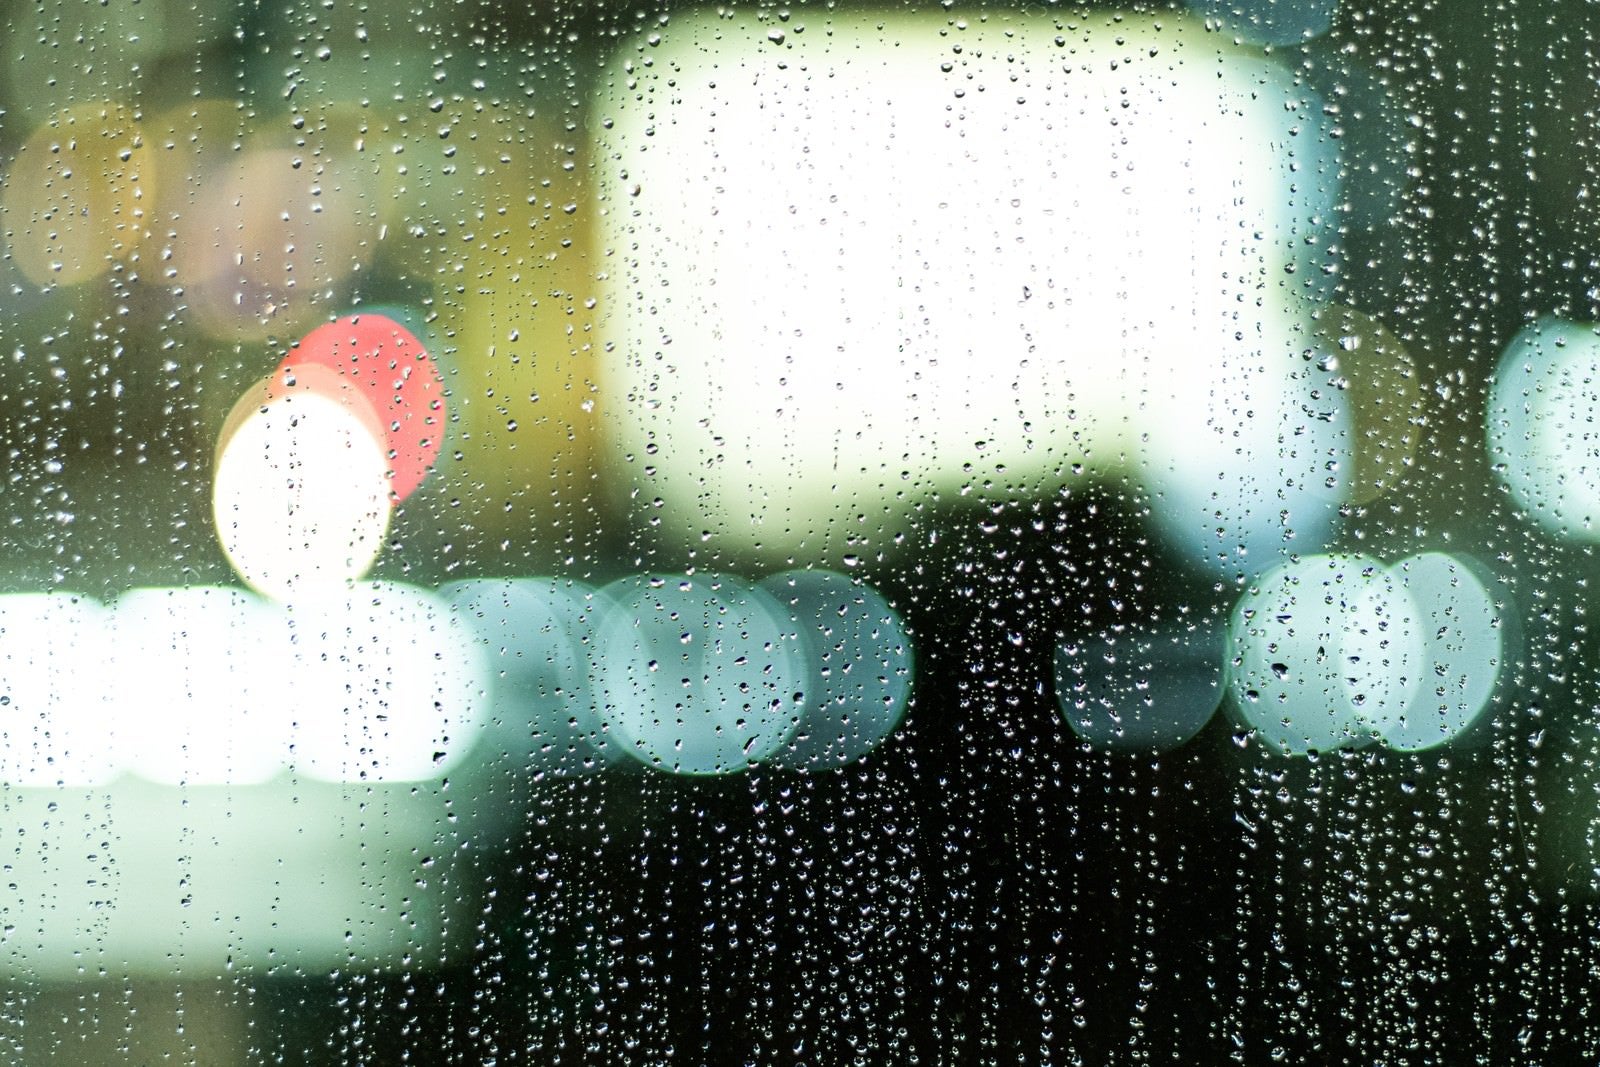 「煌めくネオンと雨粒残る窓ガラス」の写真